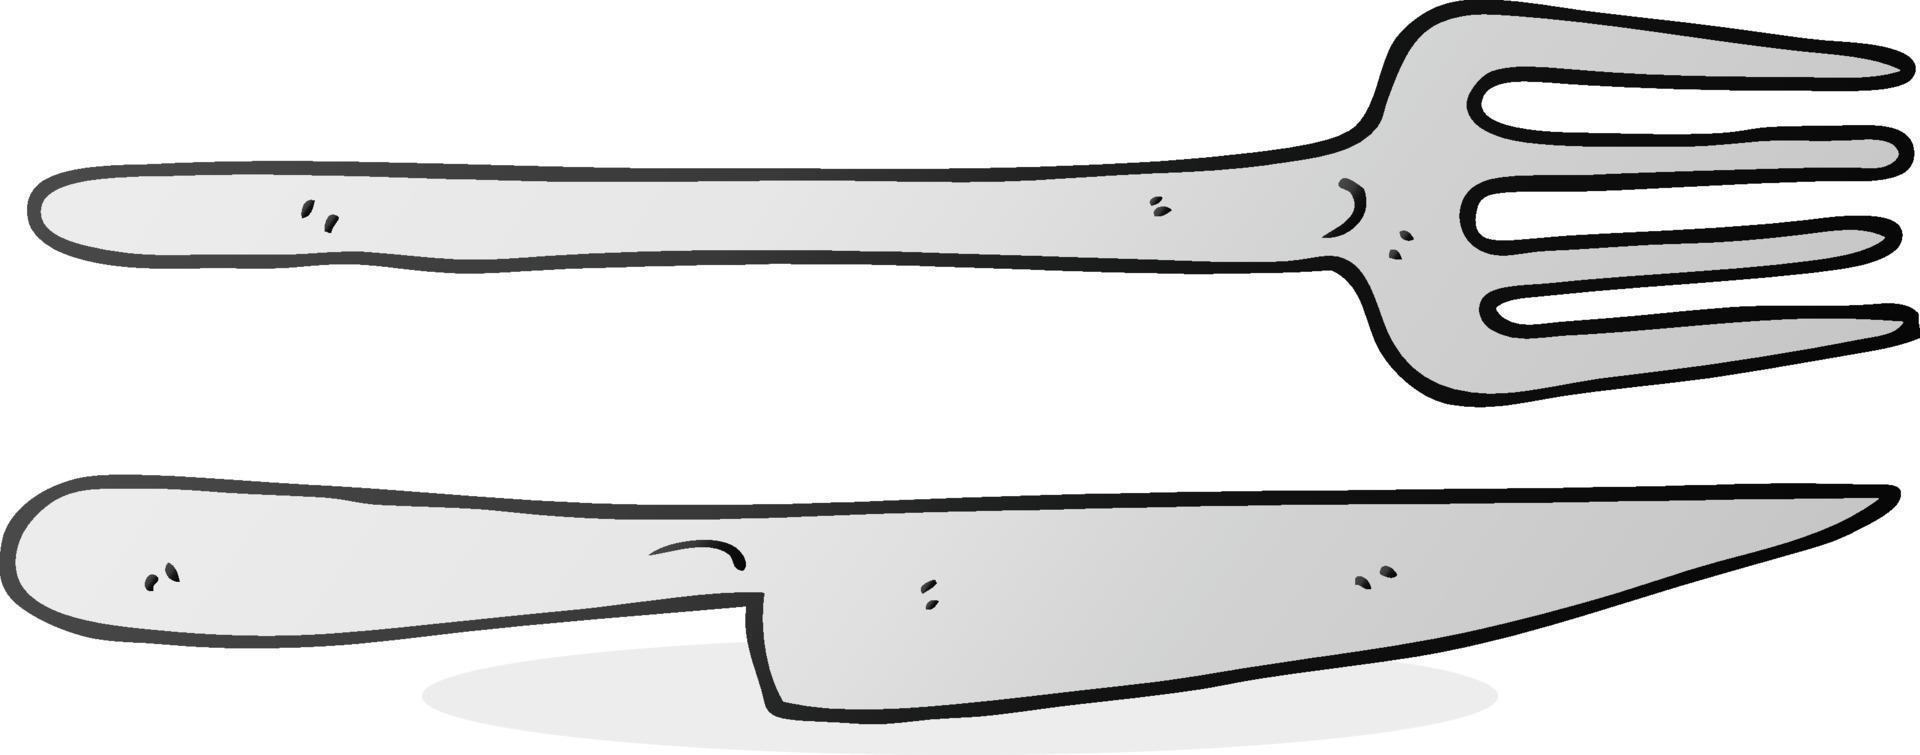 tecknad serie kniv och gaffel vektor